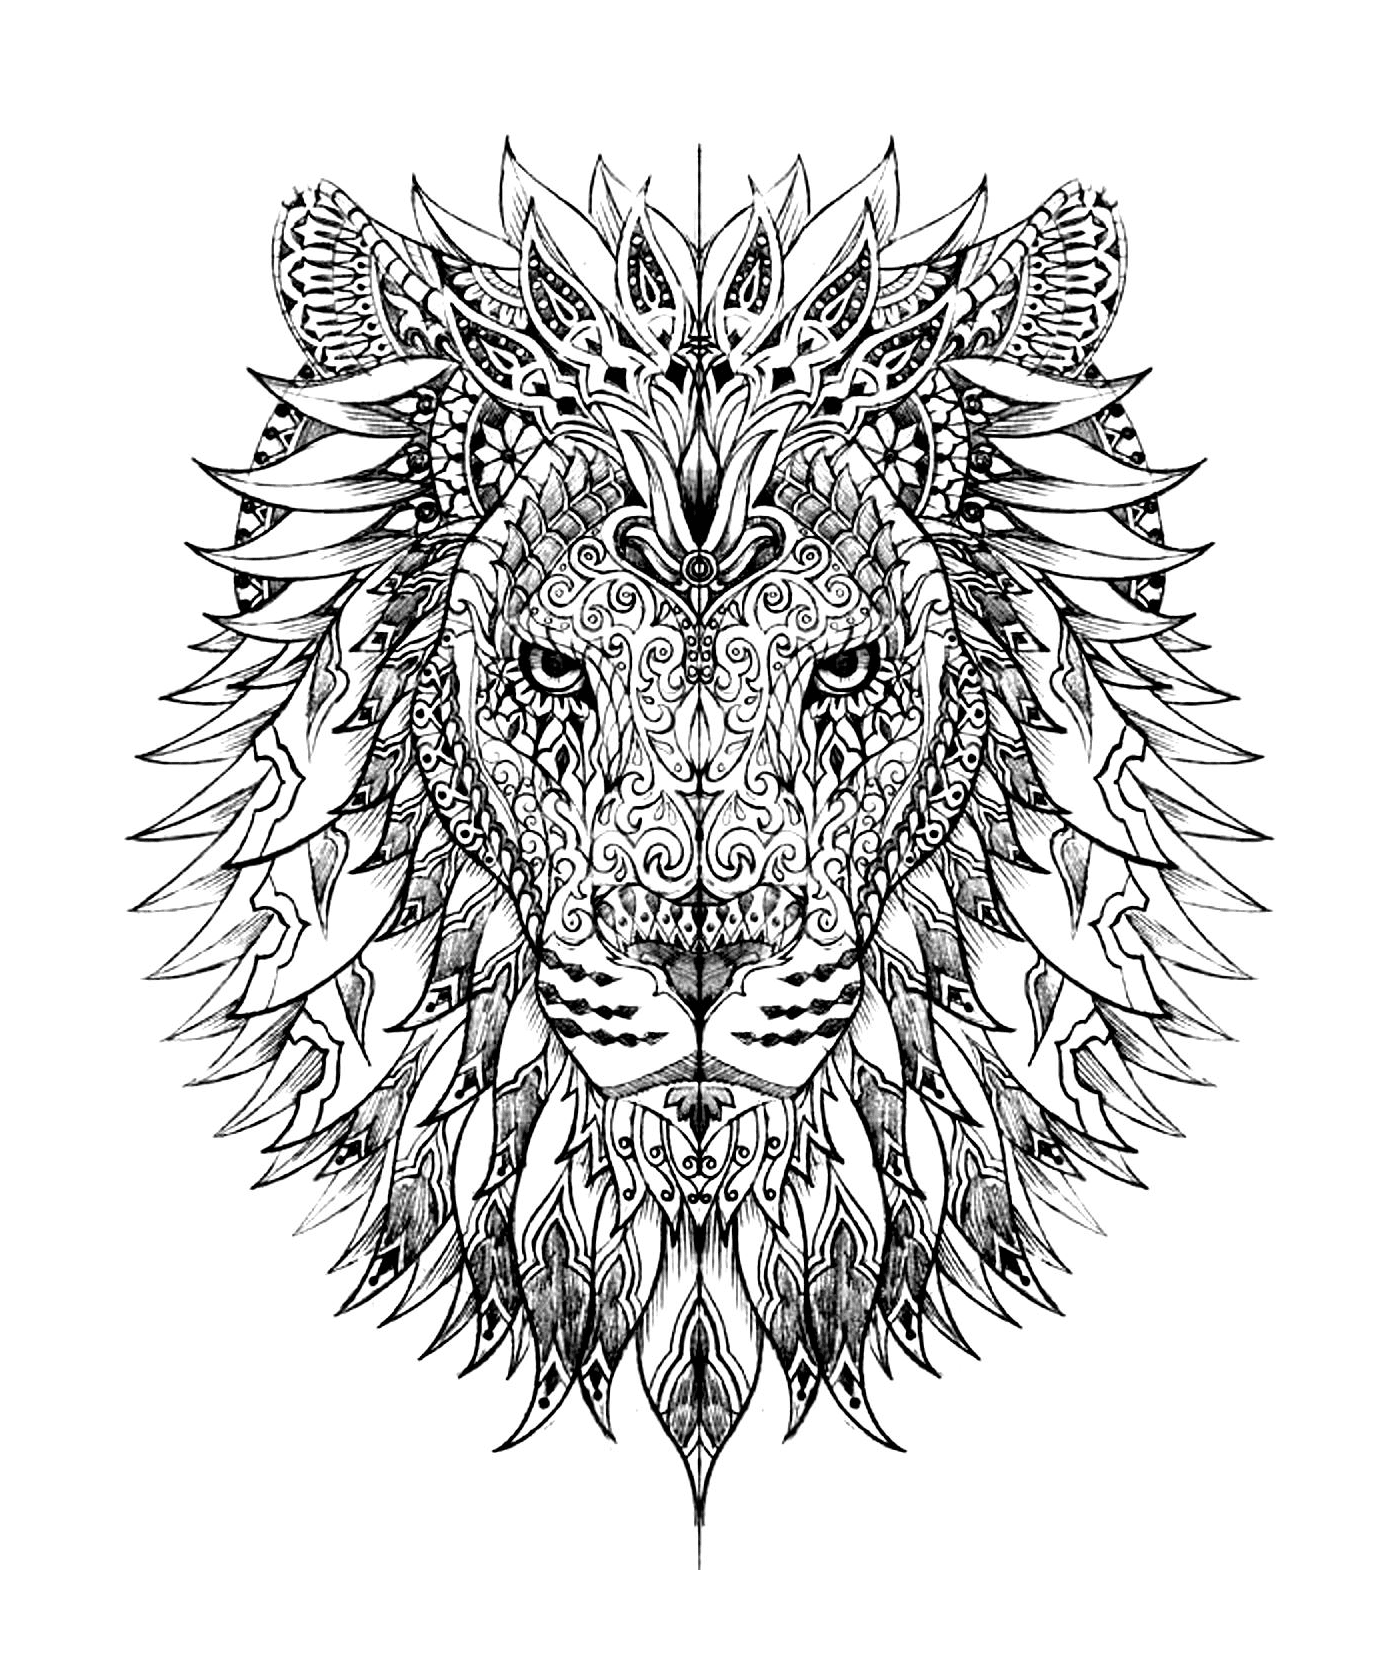  La testa di un leone complesso 